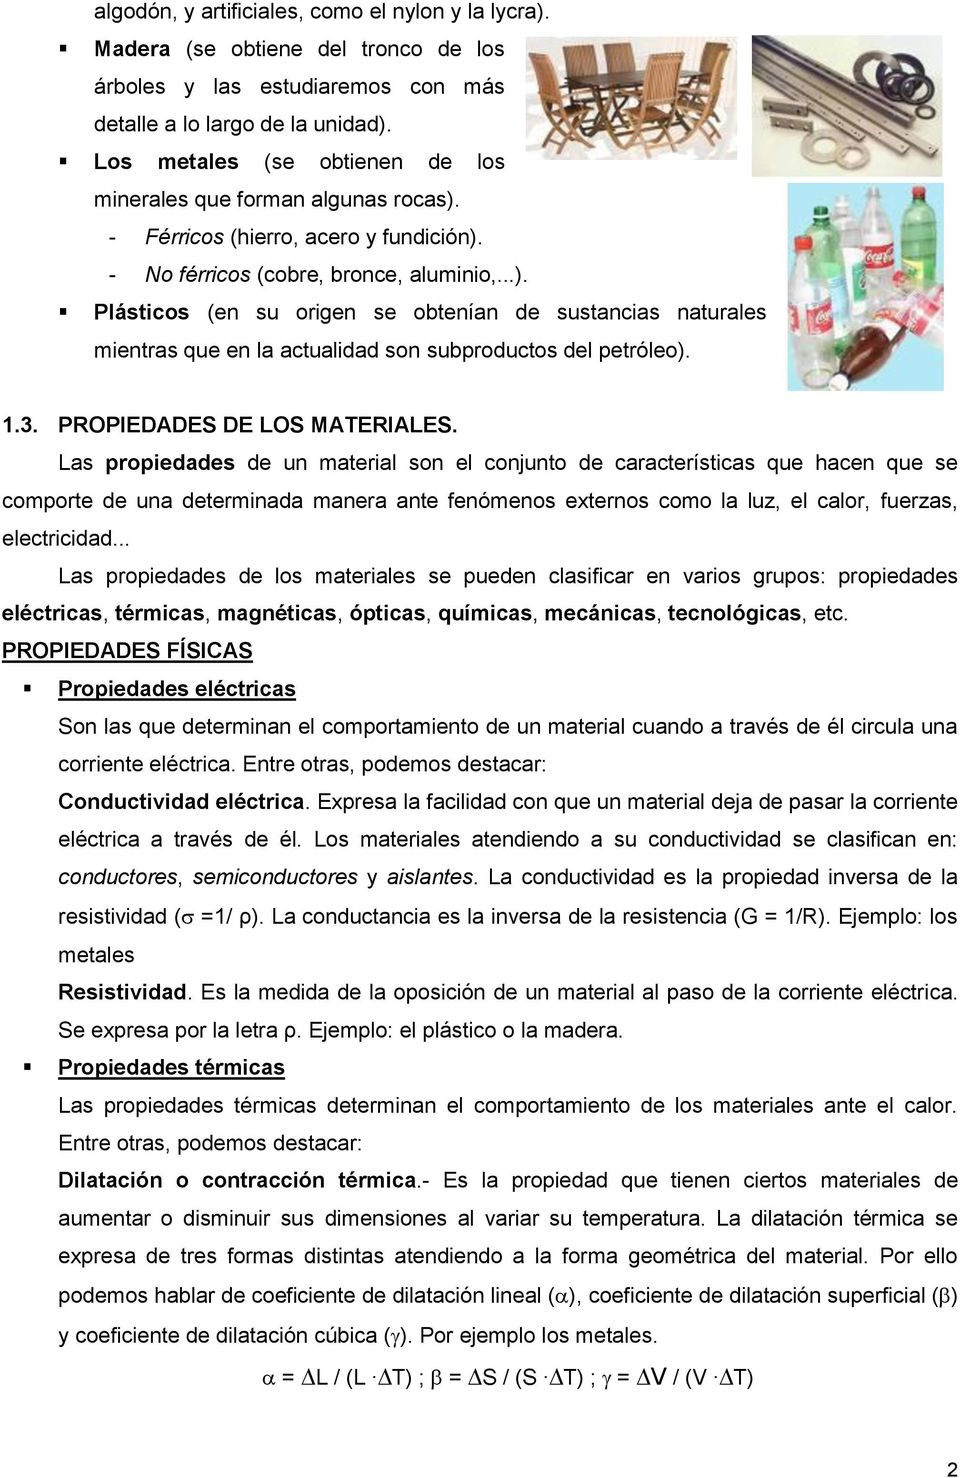 1.3. PROPIEDADES DE LOS MATERIALES.